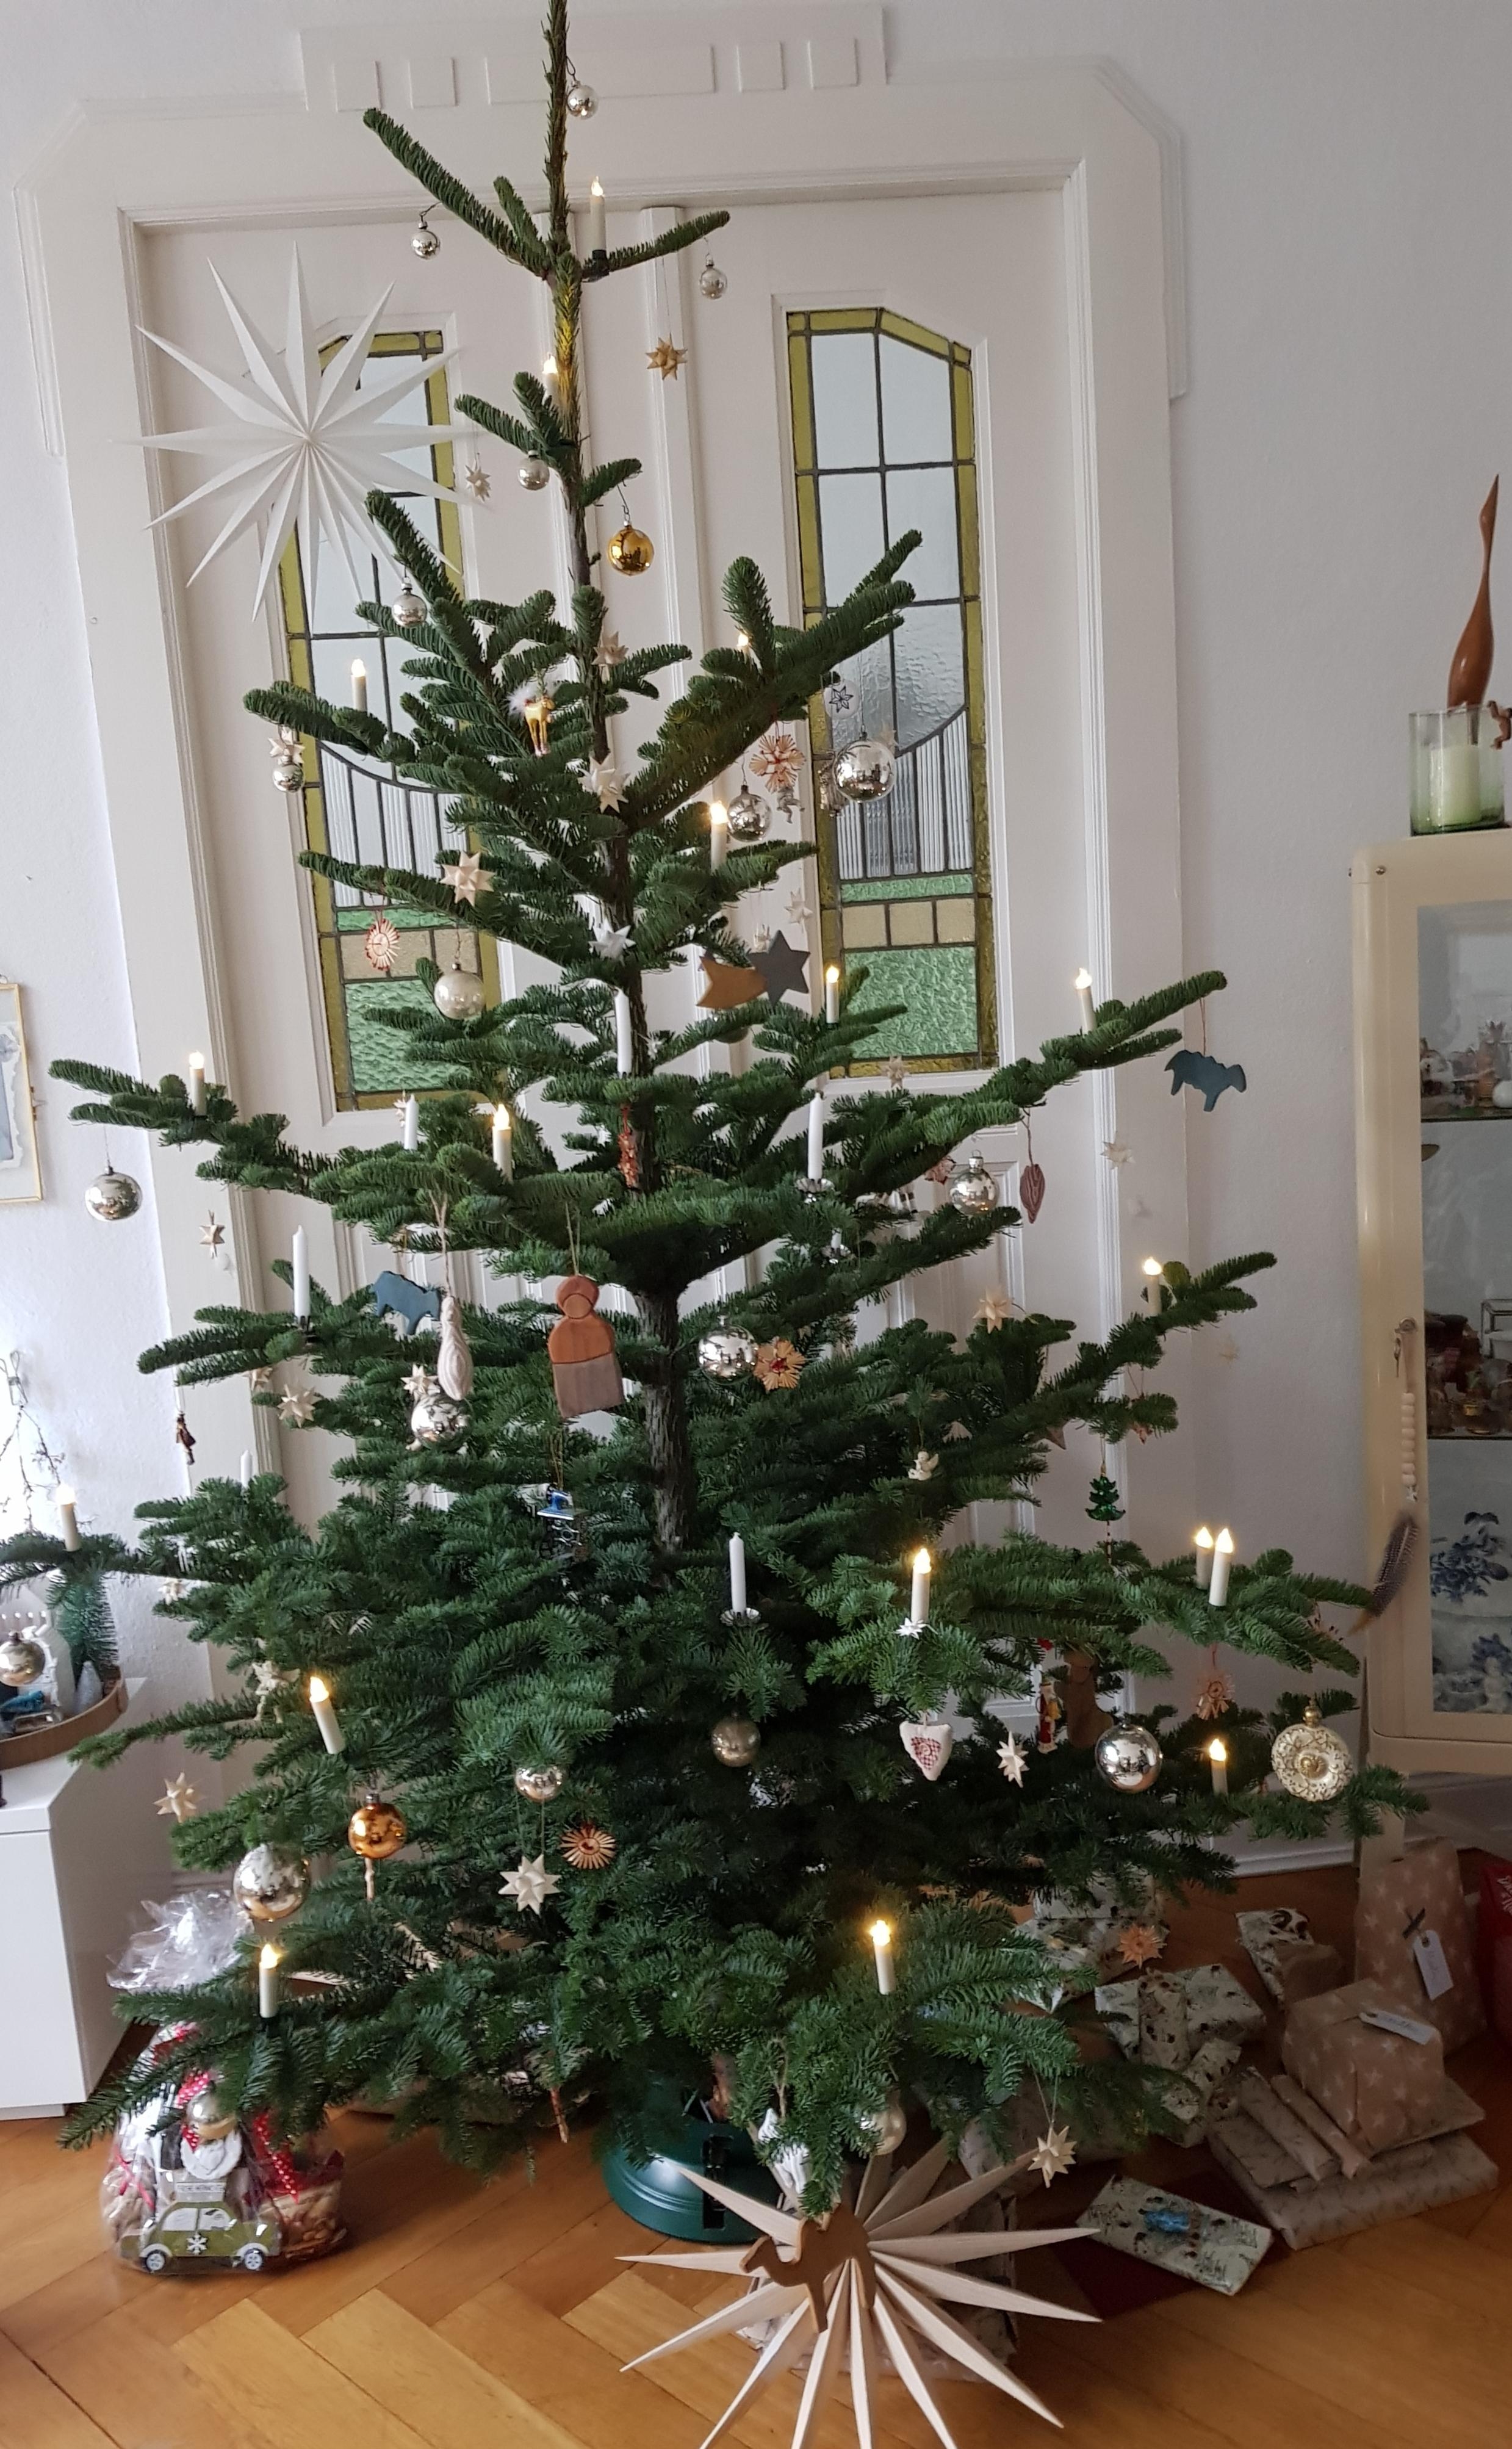 Wünsche allen ein wundervolles Weihnachtsfest 🌲🌟🎁🎅 #weihnachten #wohnzimmer #weihnachtsdeko #weihnachtsbaum